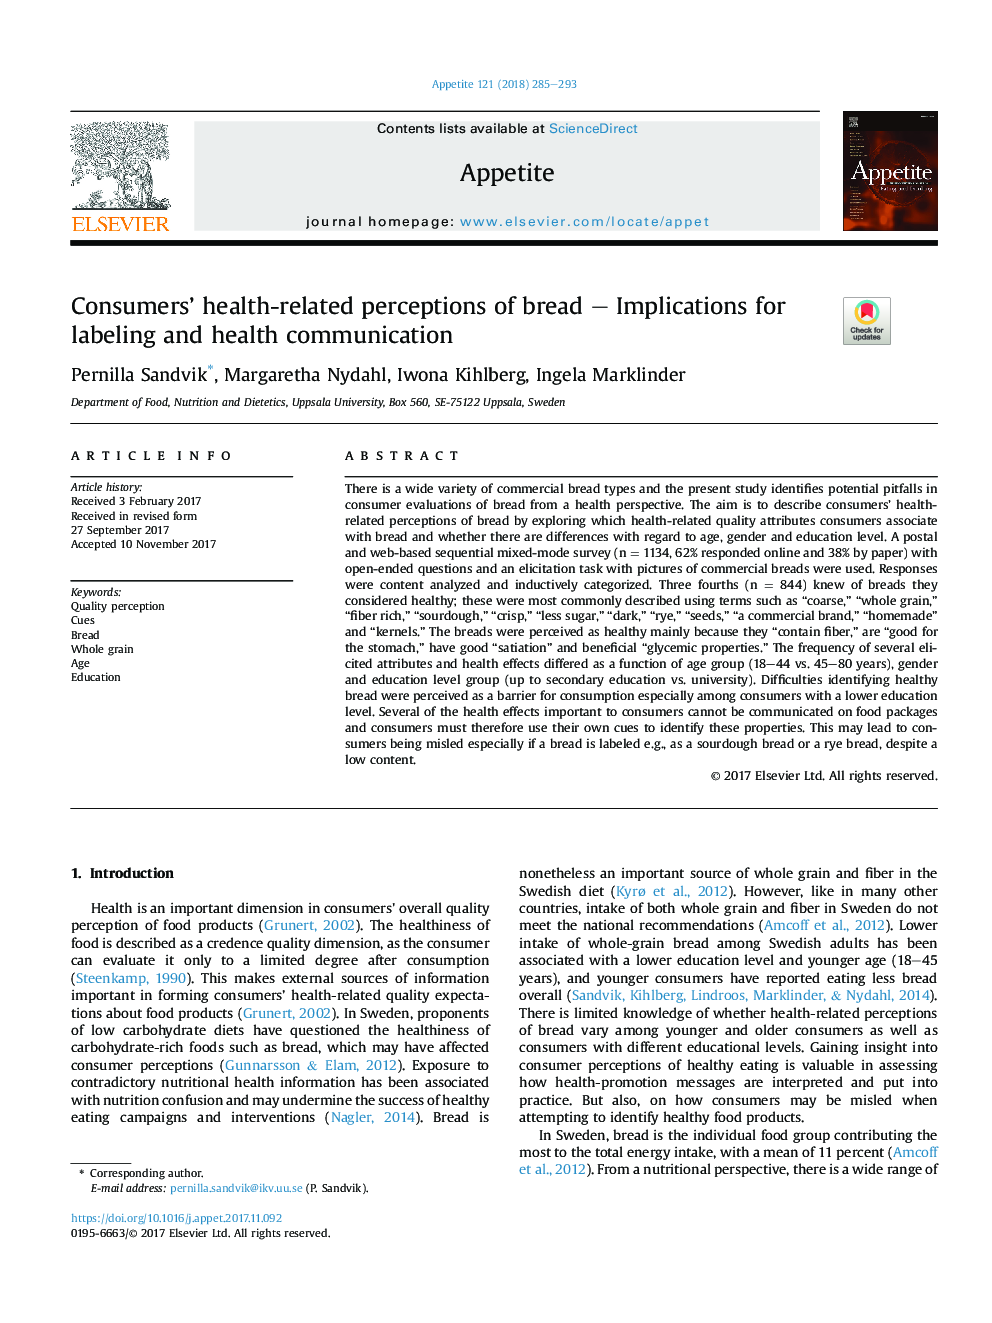 ادراکات مربوط به سلامت مصرف کنندگان نان - پیامدهایی برای برچسب زدن و ارتباطات بهداشتی 